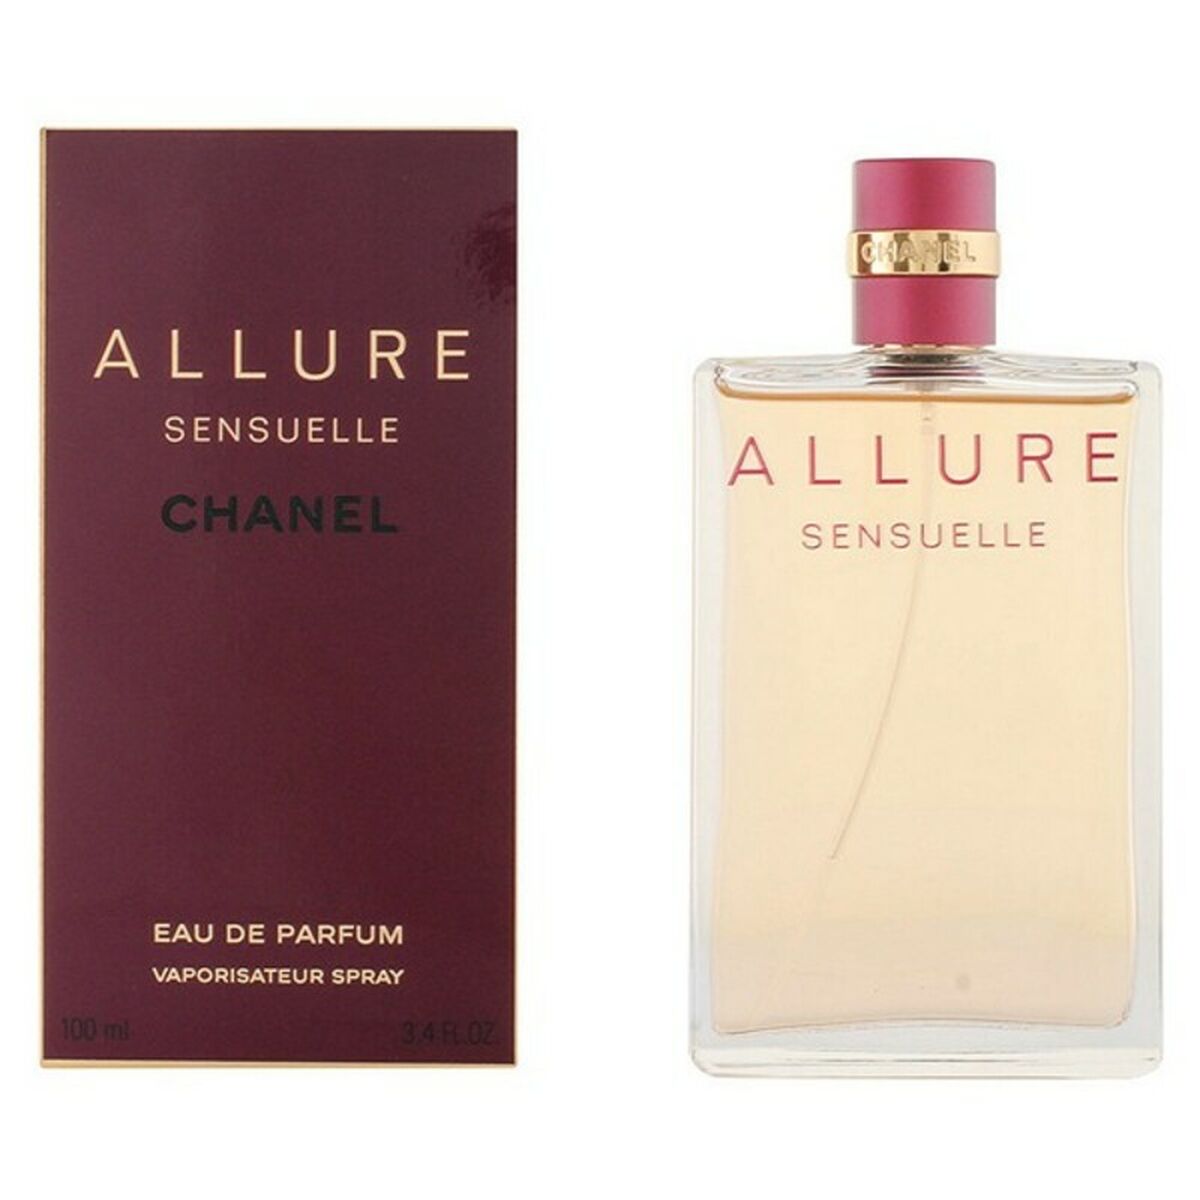 Chanel Allure 1.7 oz Eau de Parfum Spray